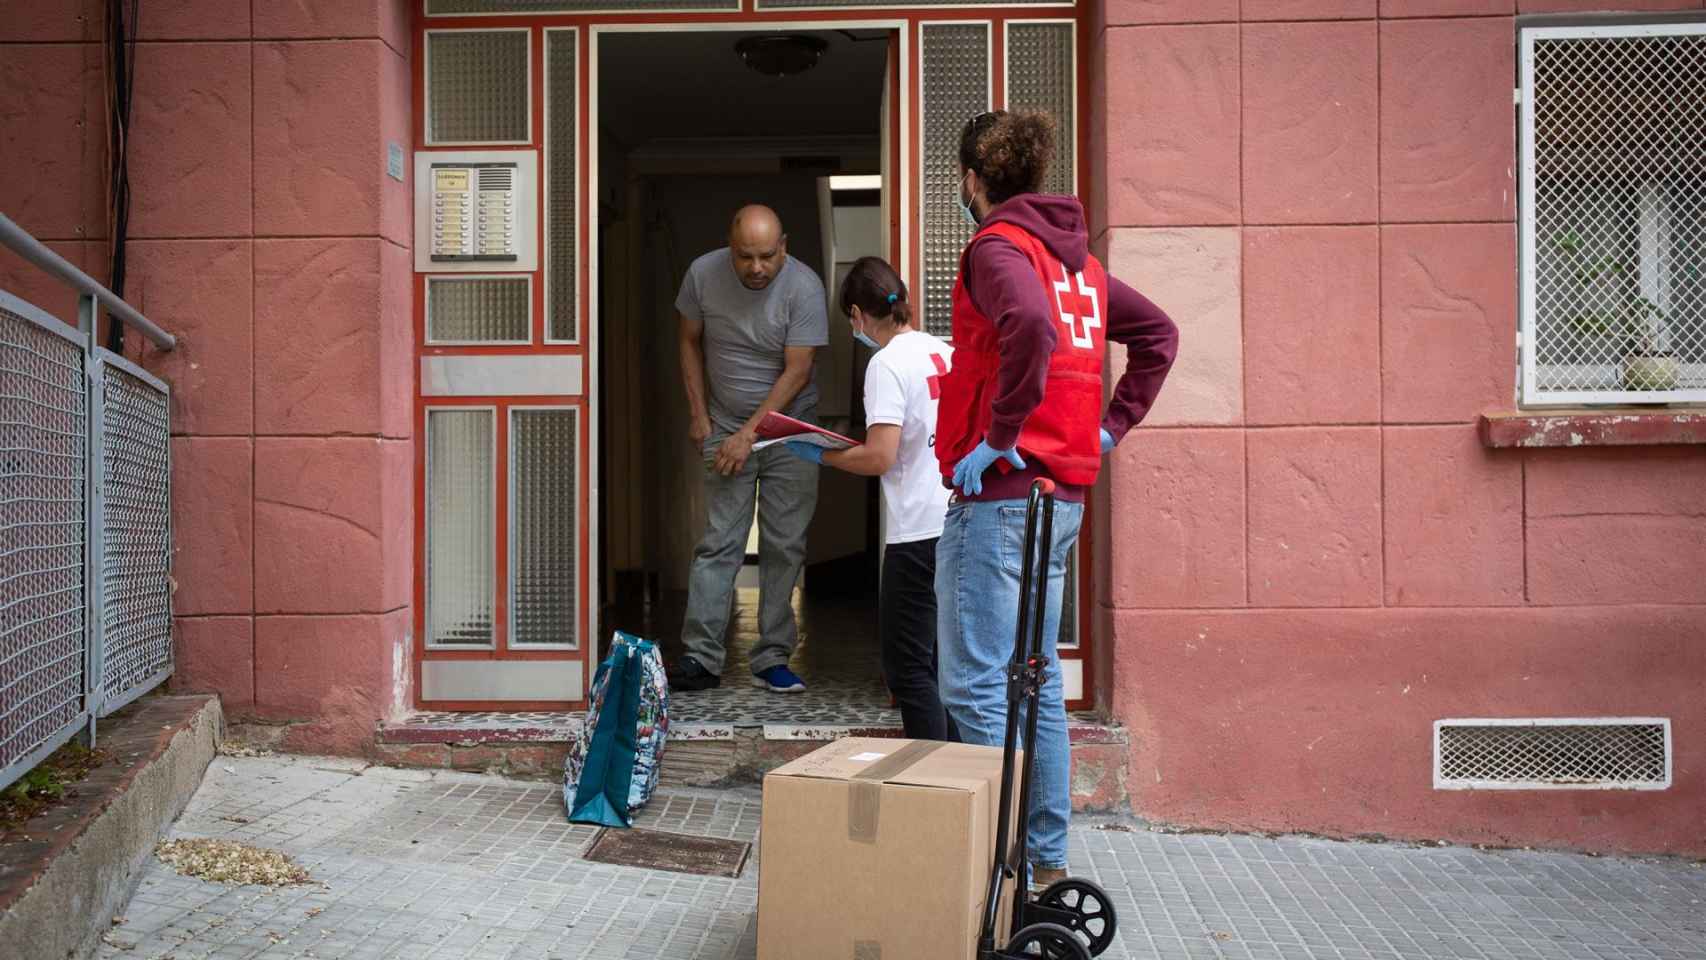 Las peticiones de ayuda humanitaria a Creu Roja de Catalunya aumentaron un 279% en mayo del 2020, en comparación con el año anterior, coincidiendo con uno de los peores momentos